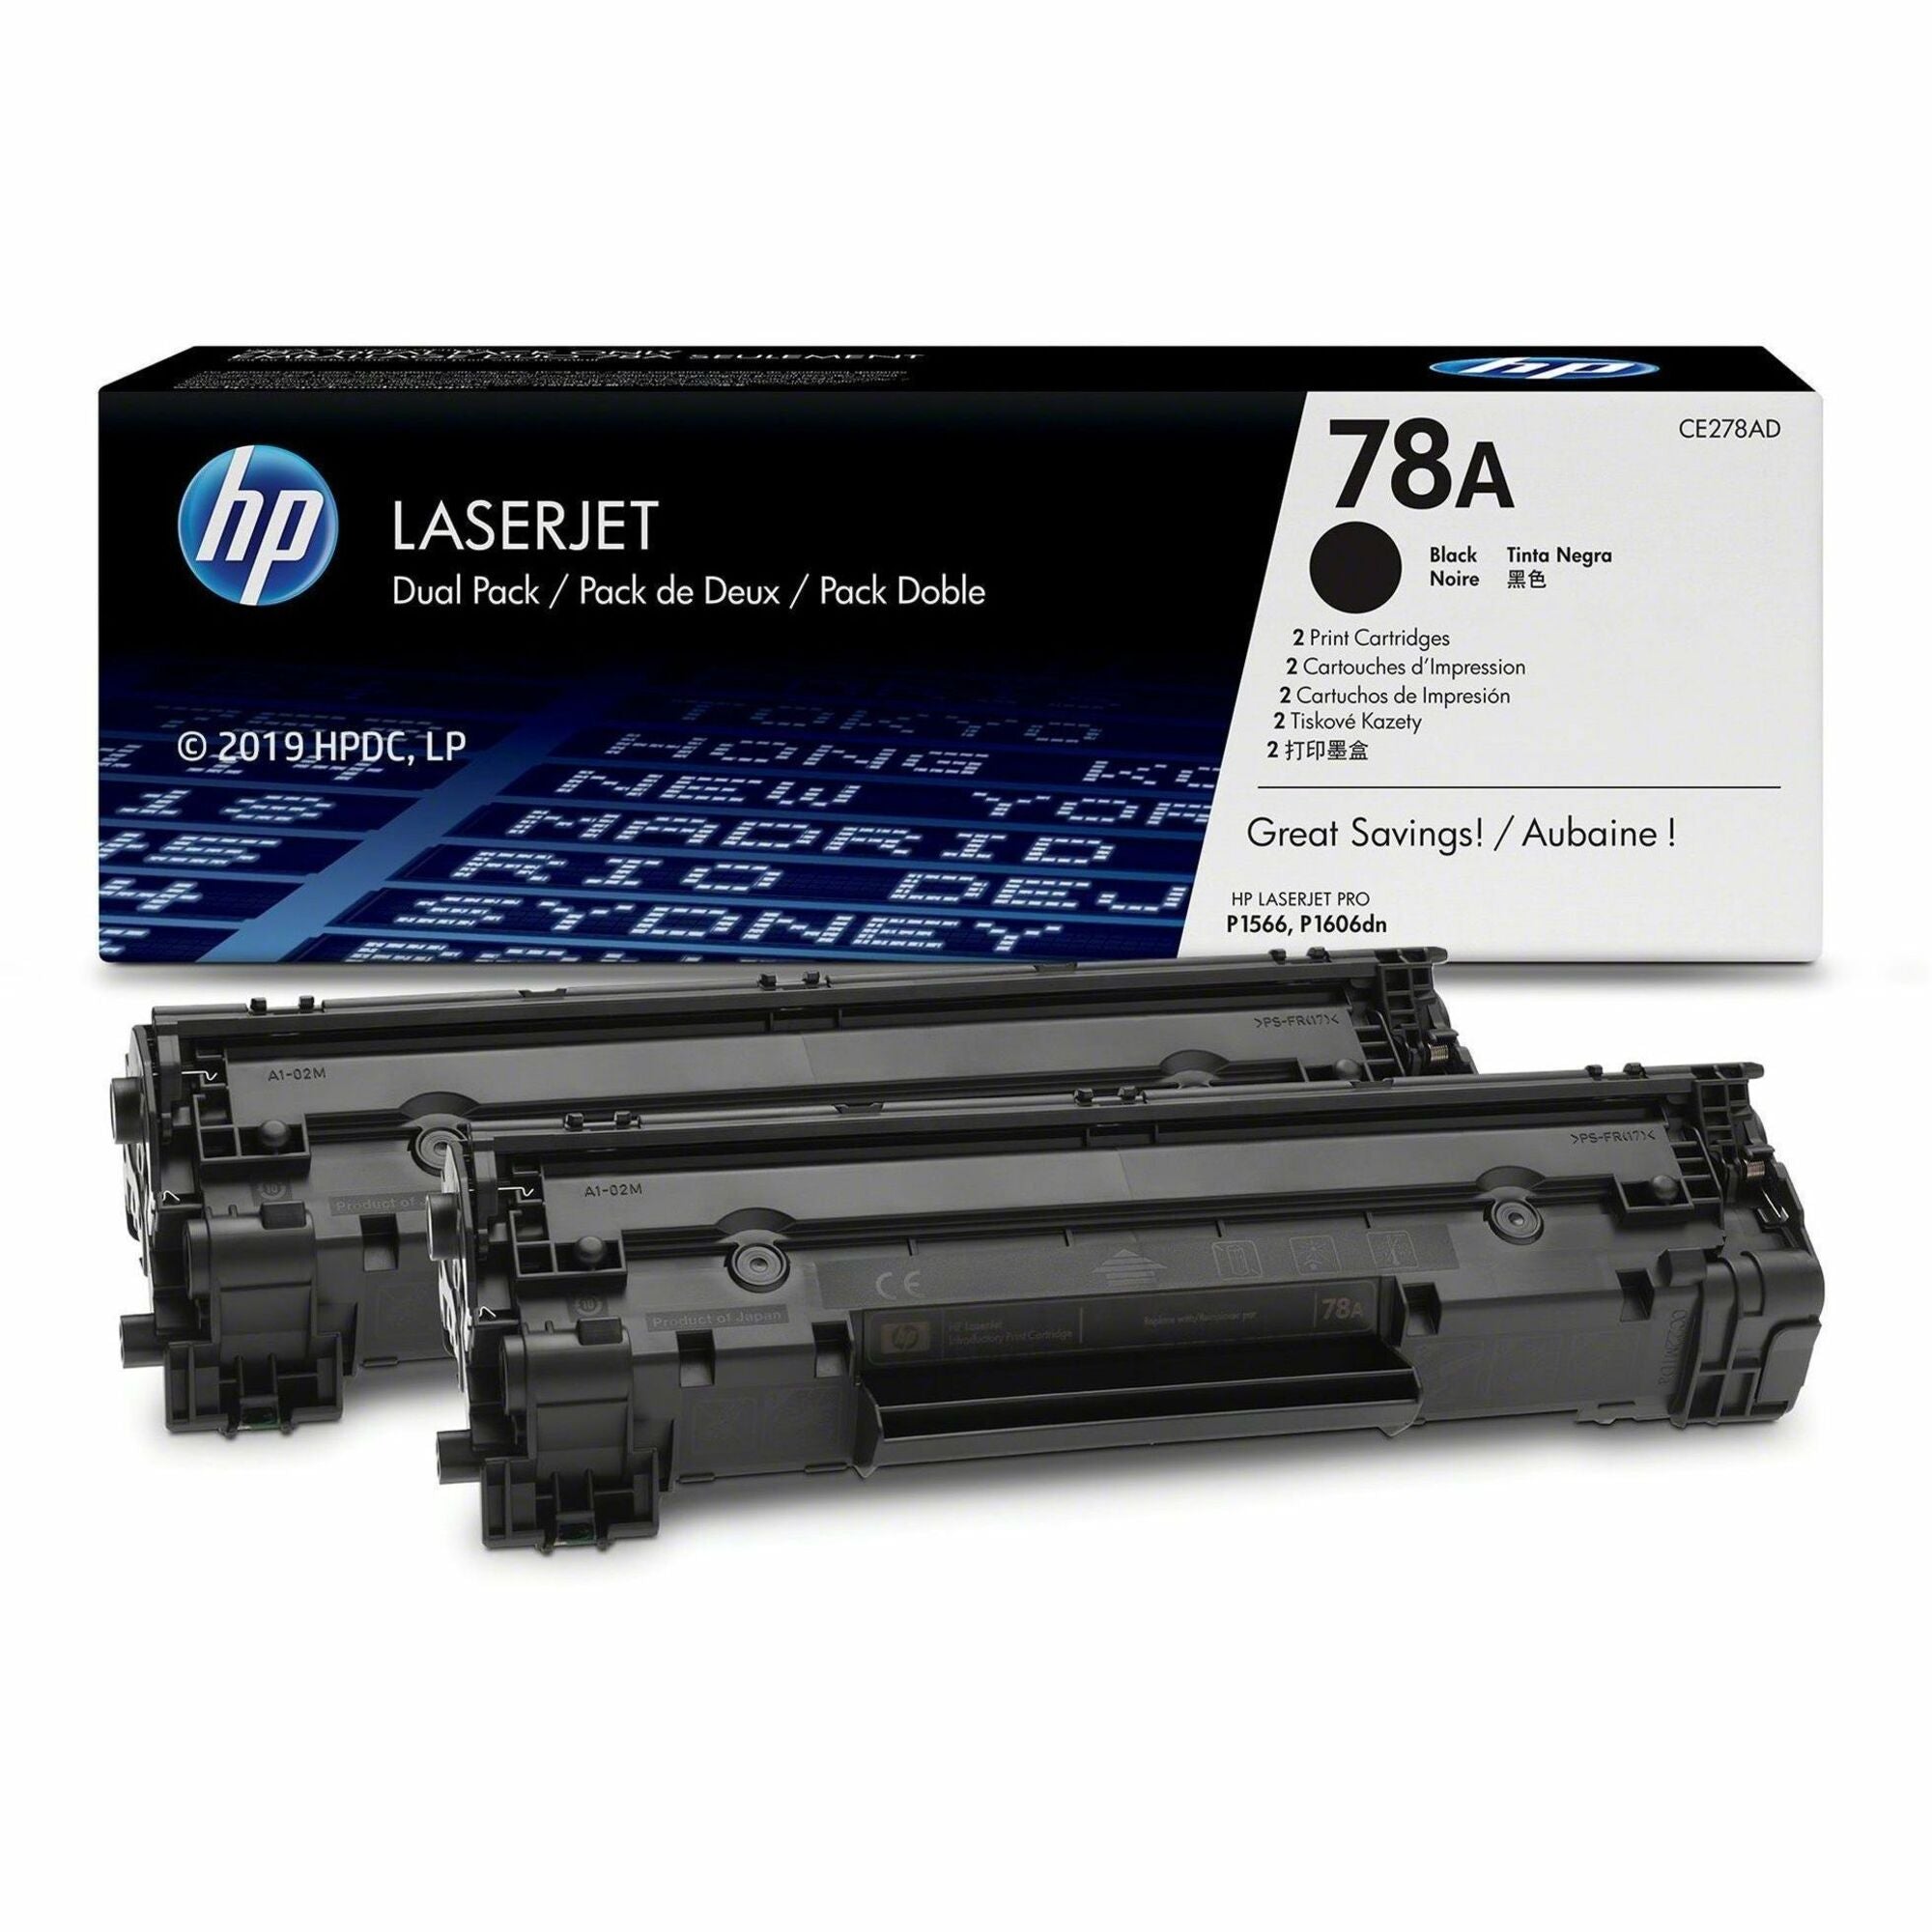 hp-78a-2-pack-black-original-laserjet-toner-cartridges-2100-pages_hewce278ad - 1